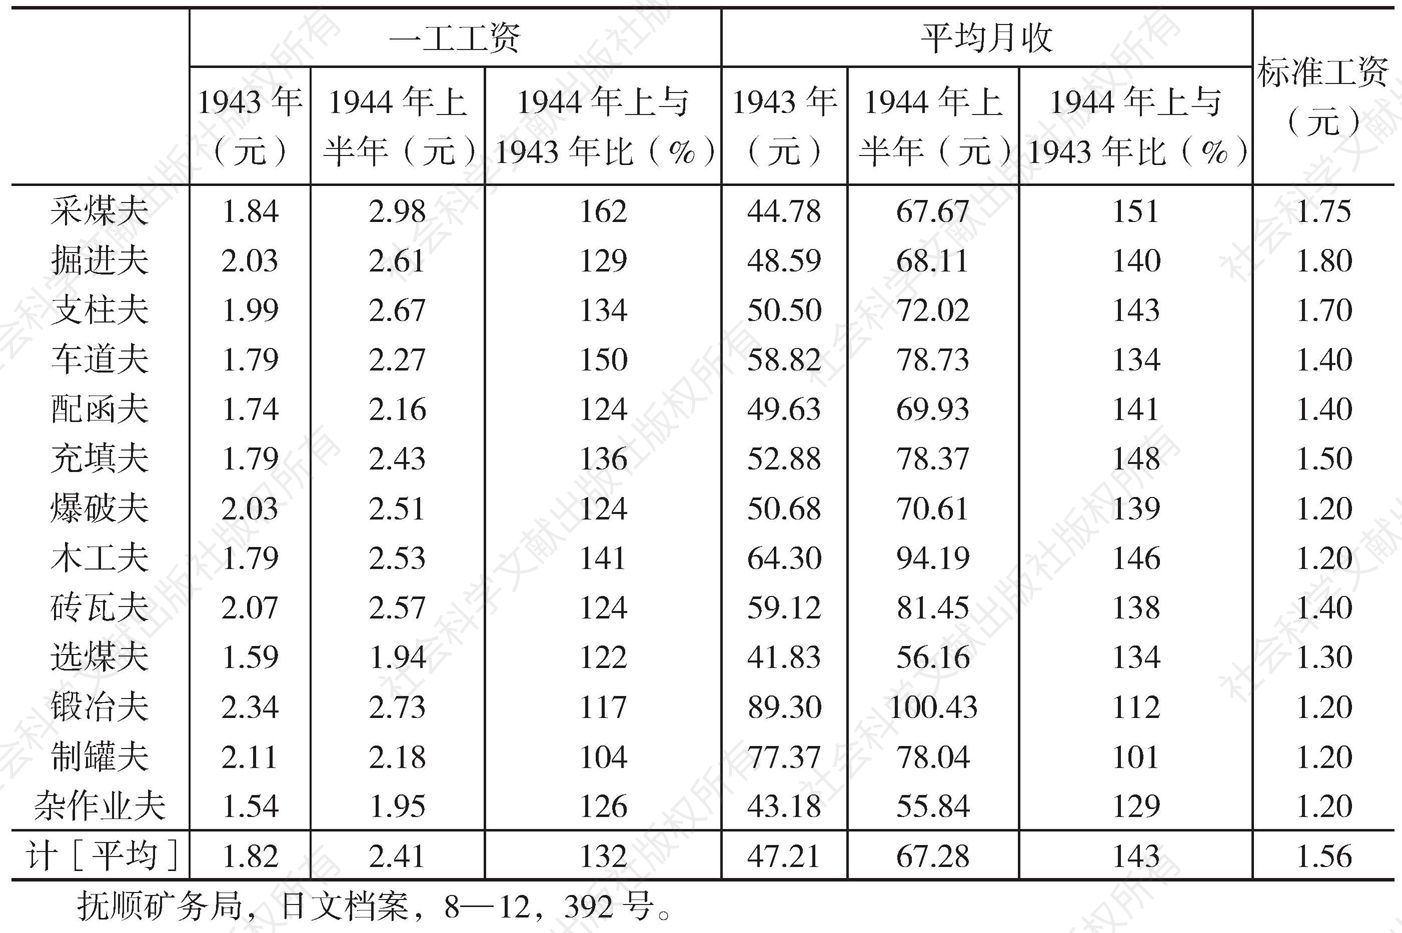 1943～1944年上半年抚顺煤矿第二种佣员职名别工资比较